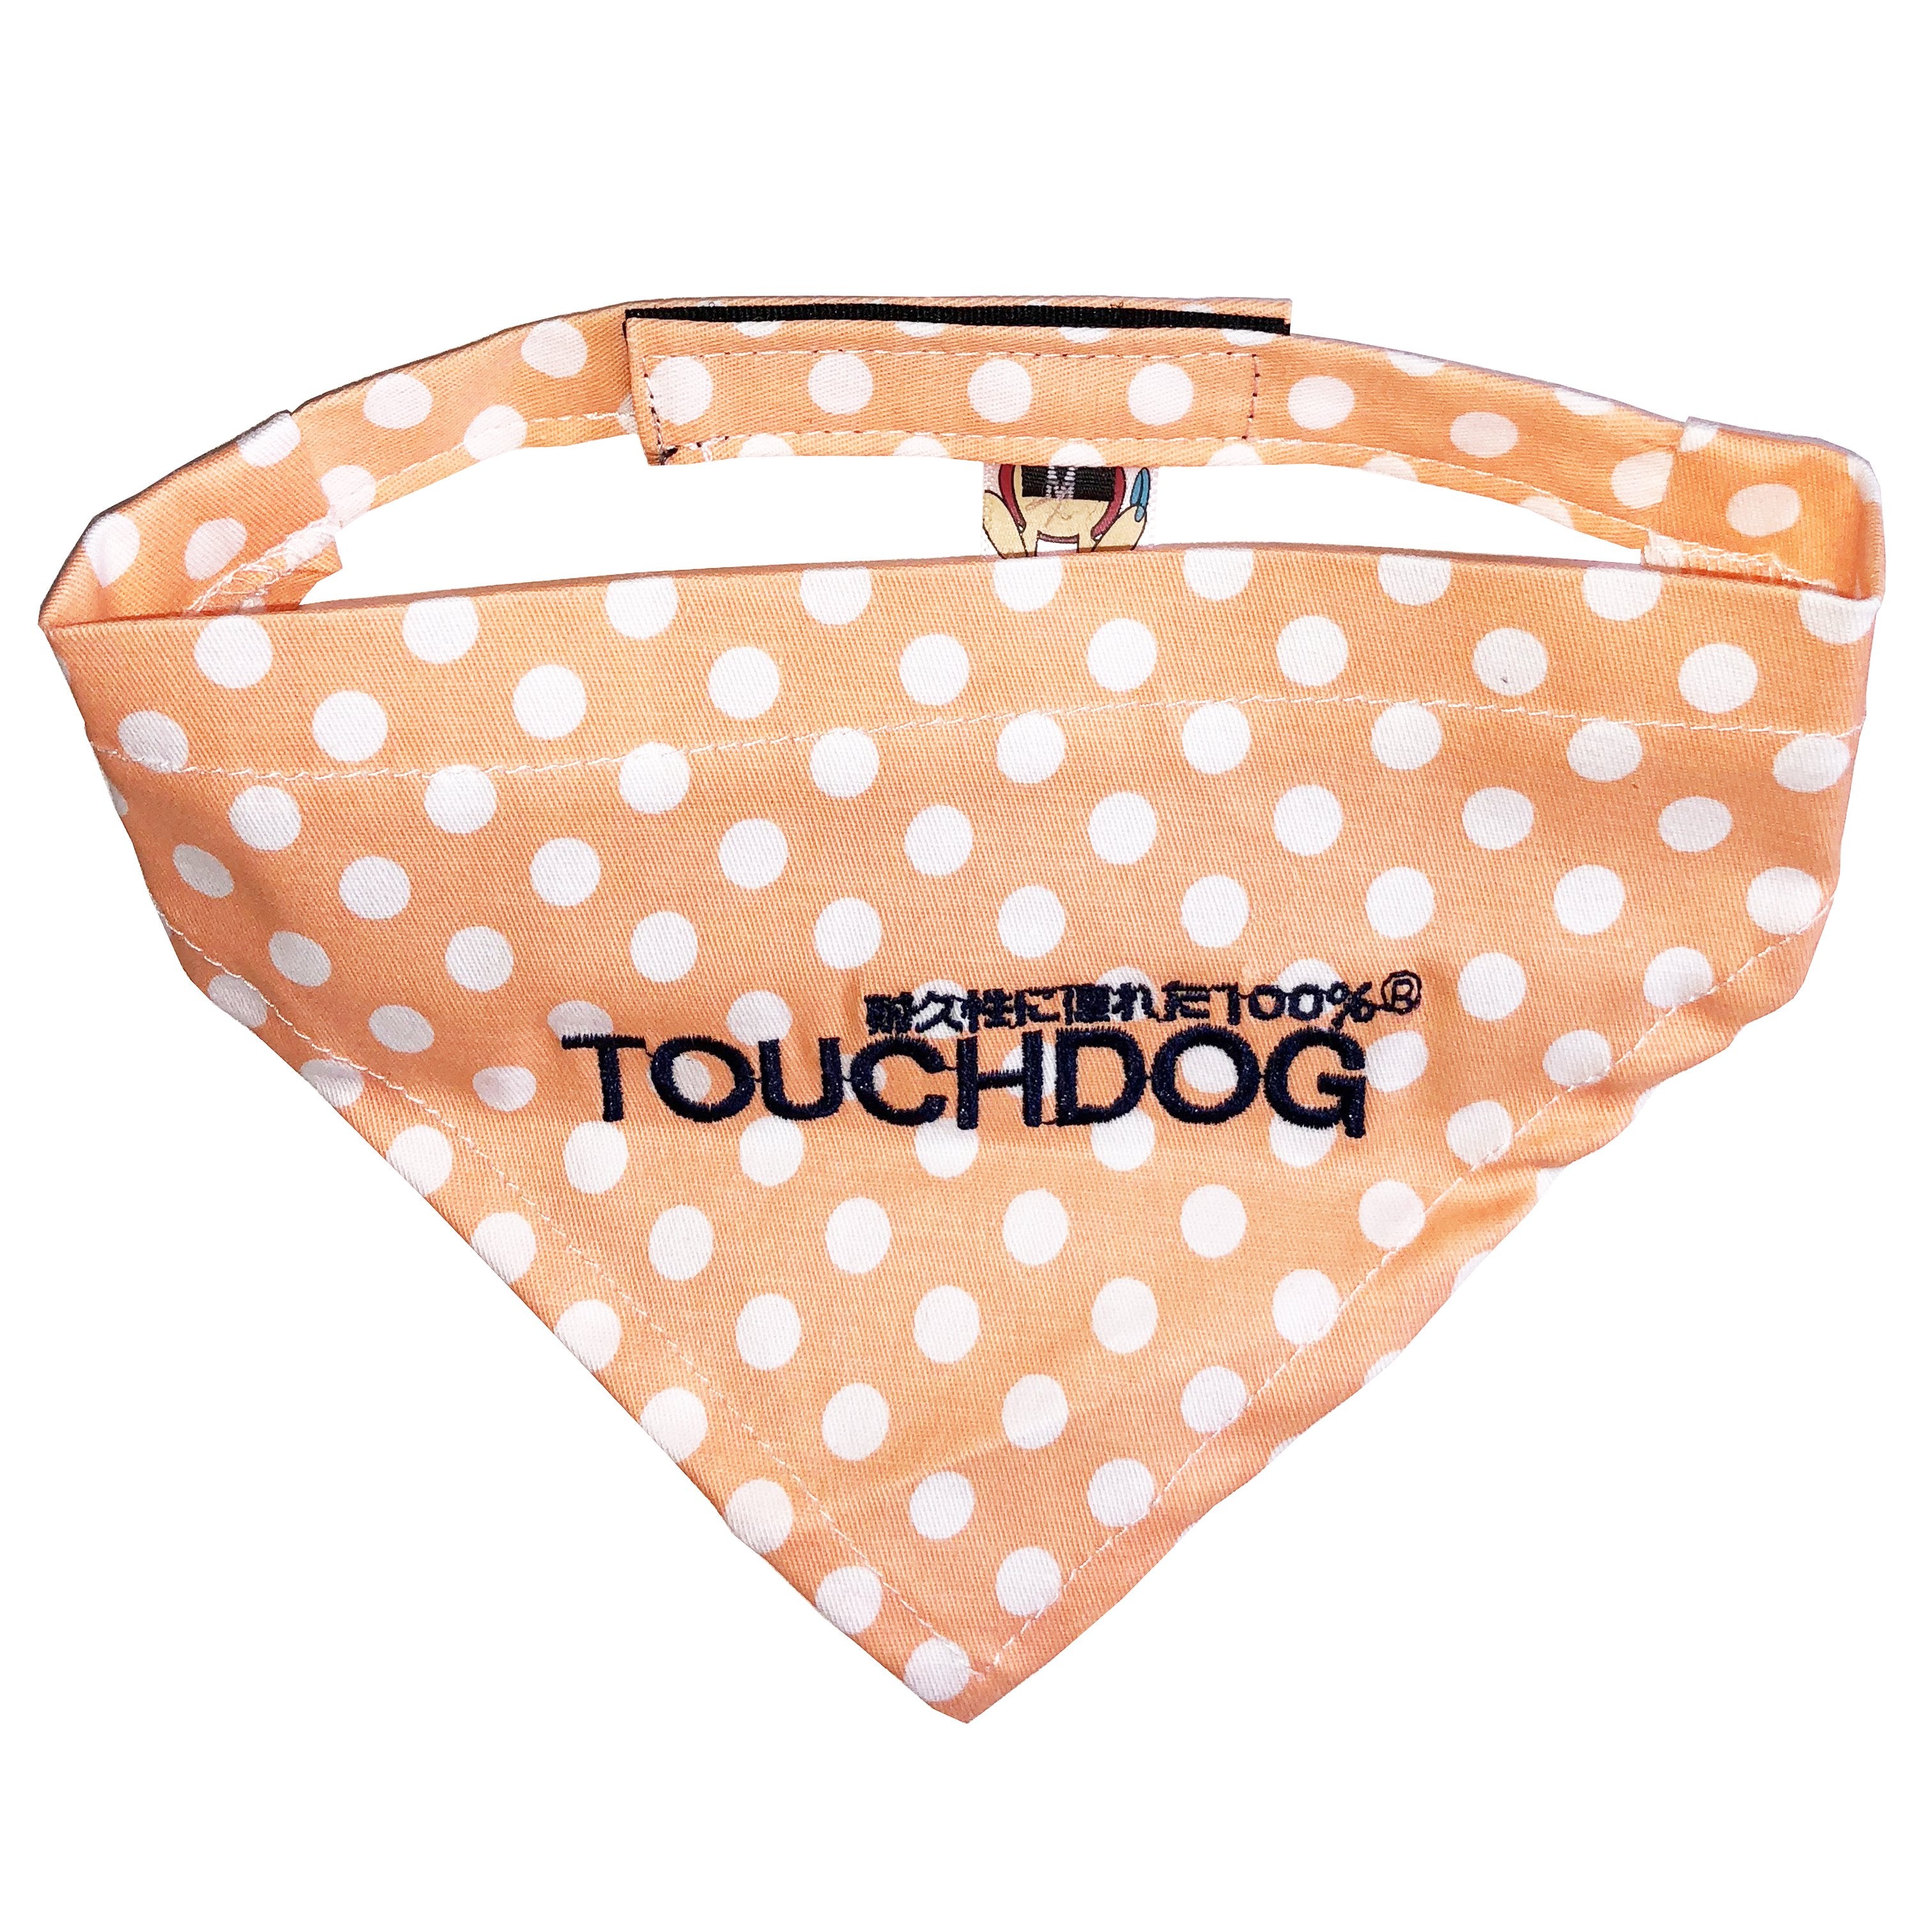 Touchdog® Bad-to-the-Bone Polka Bandana - Large - Orange